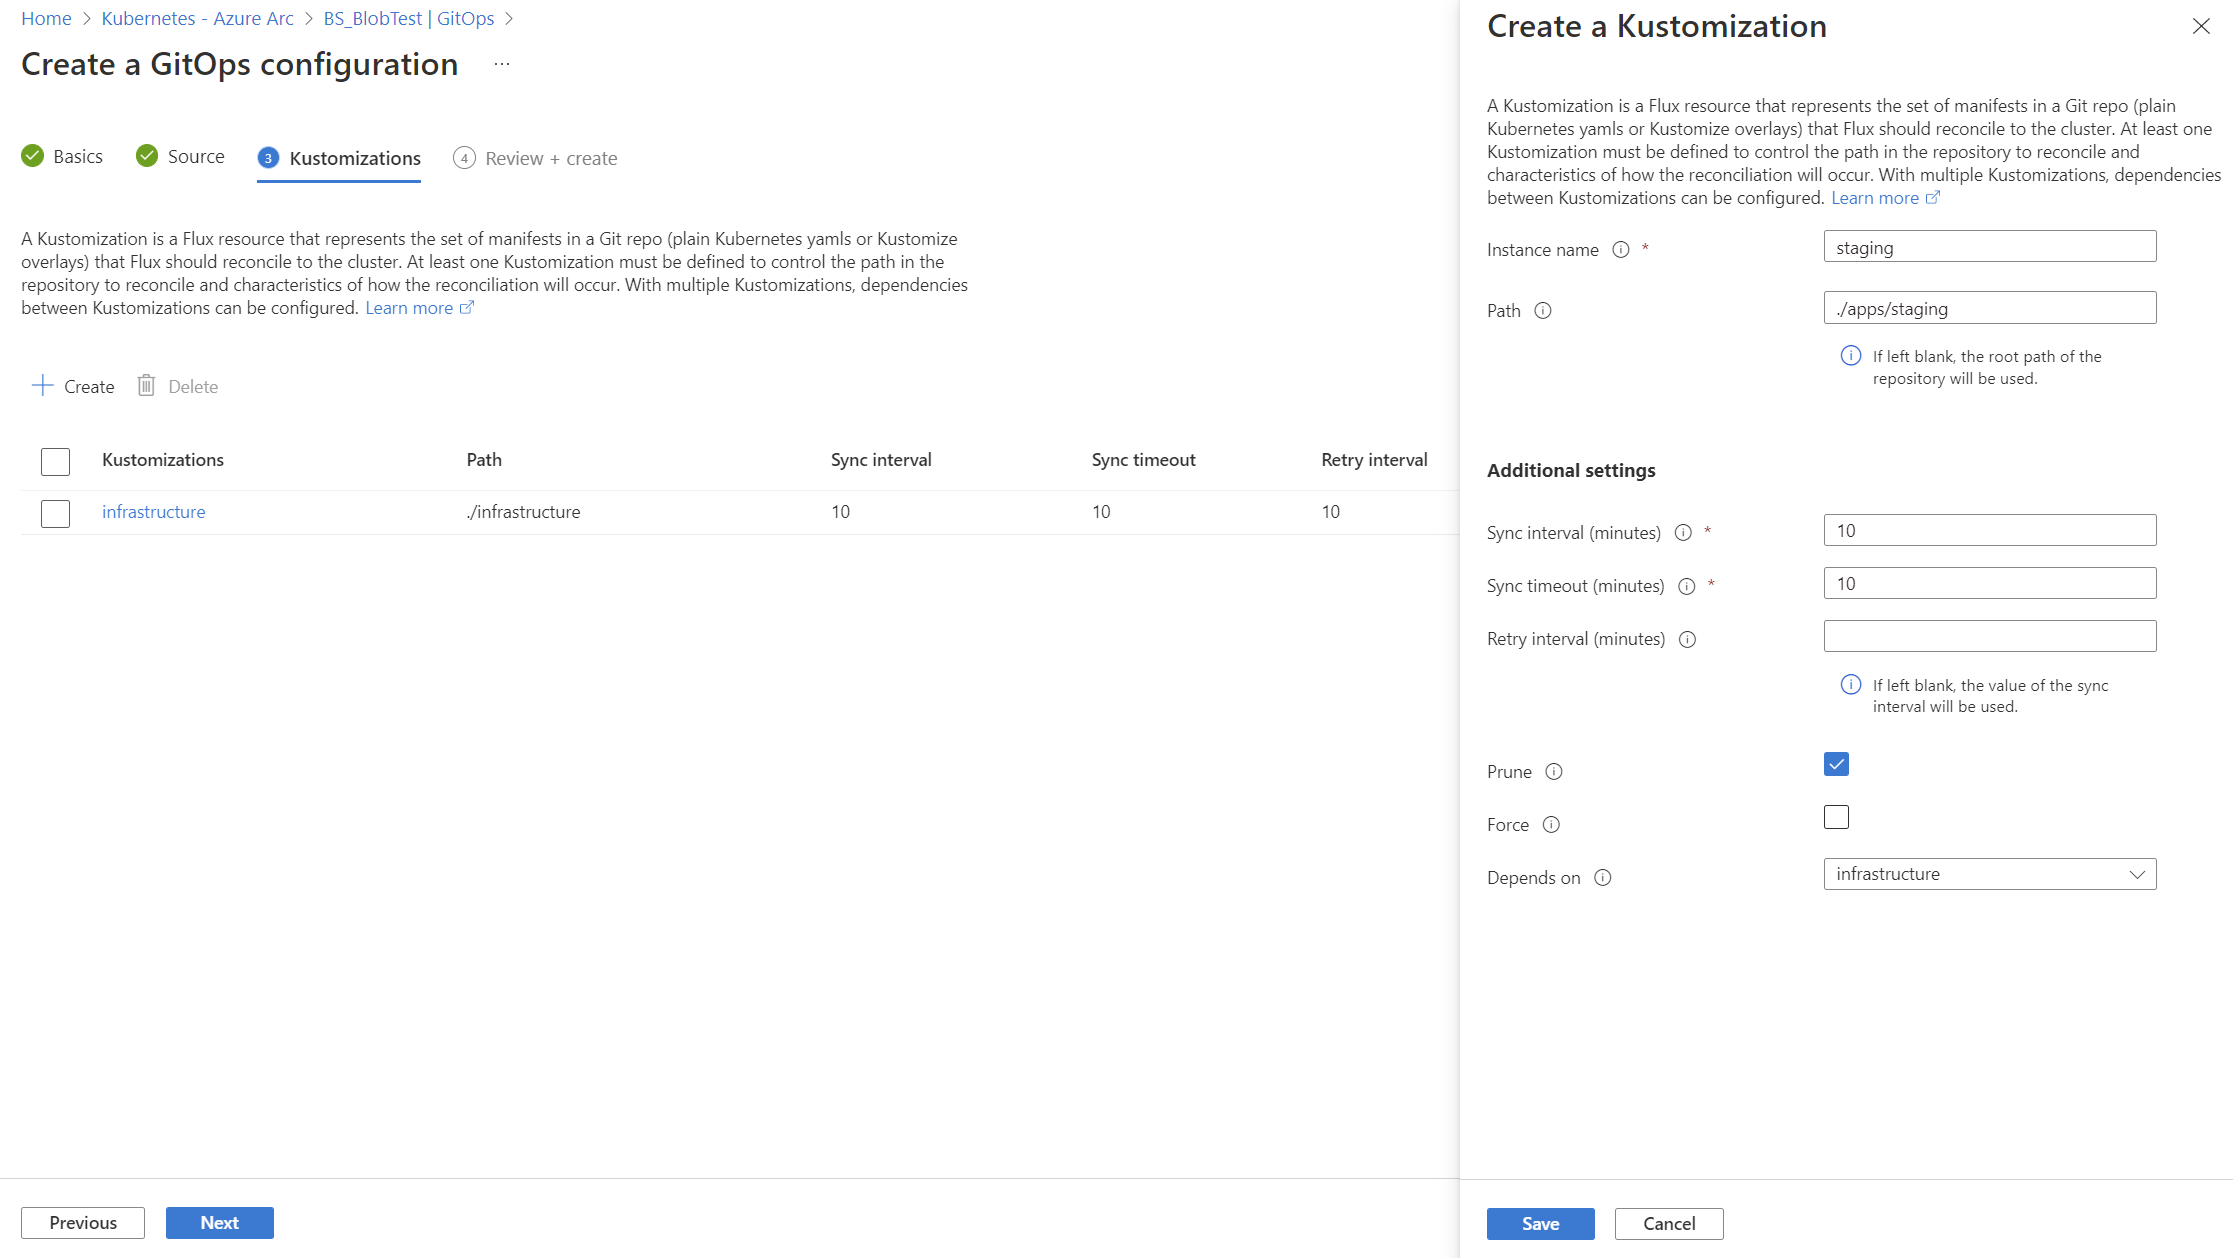 Zrzut ekranu przedstawiający opcje tworzenia przejściowej kustomizacji w Azure Portal.